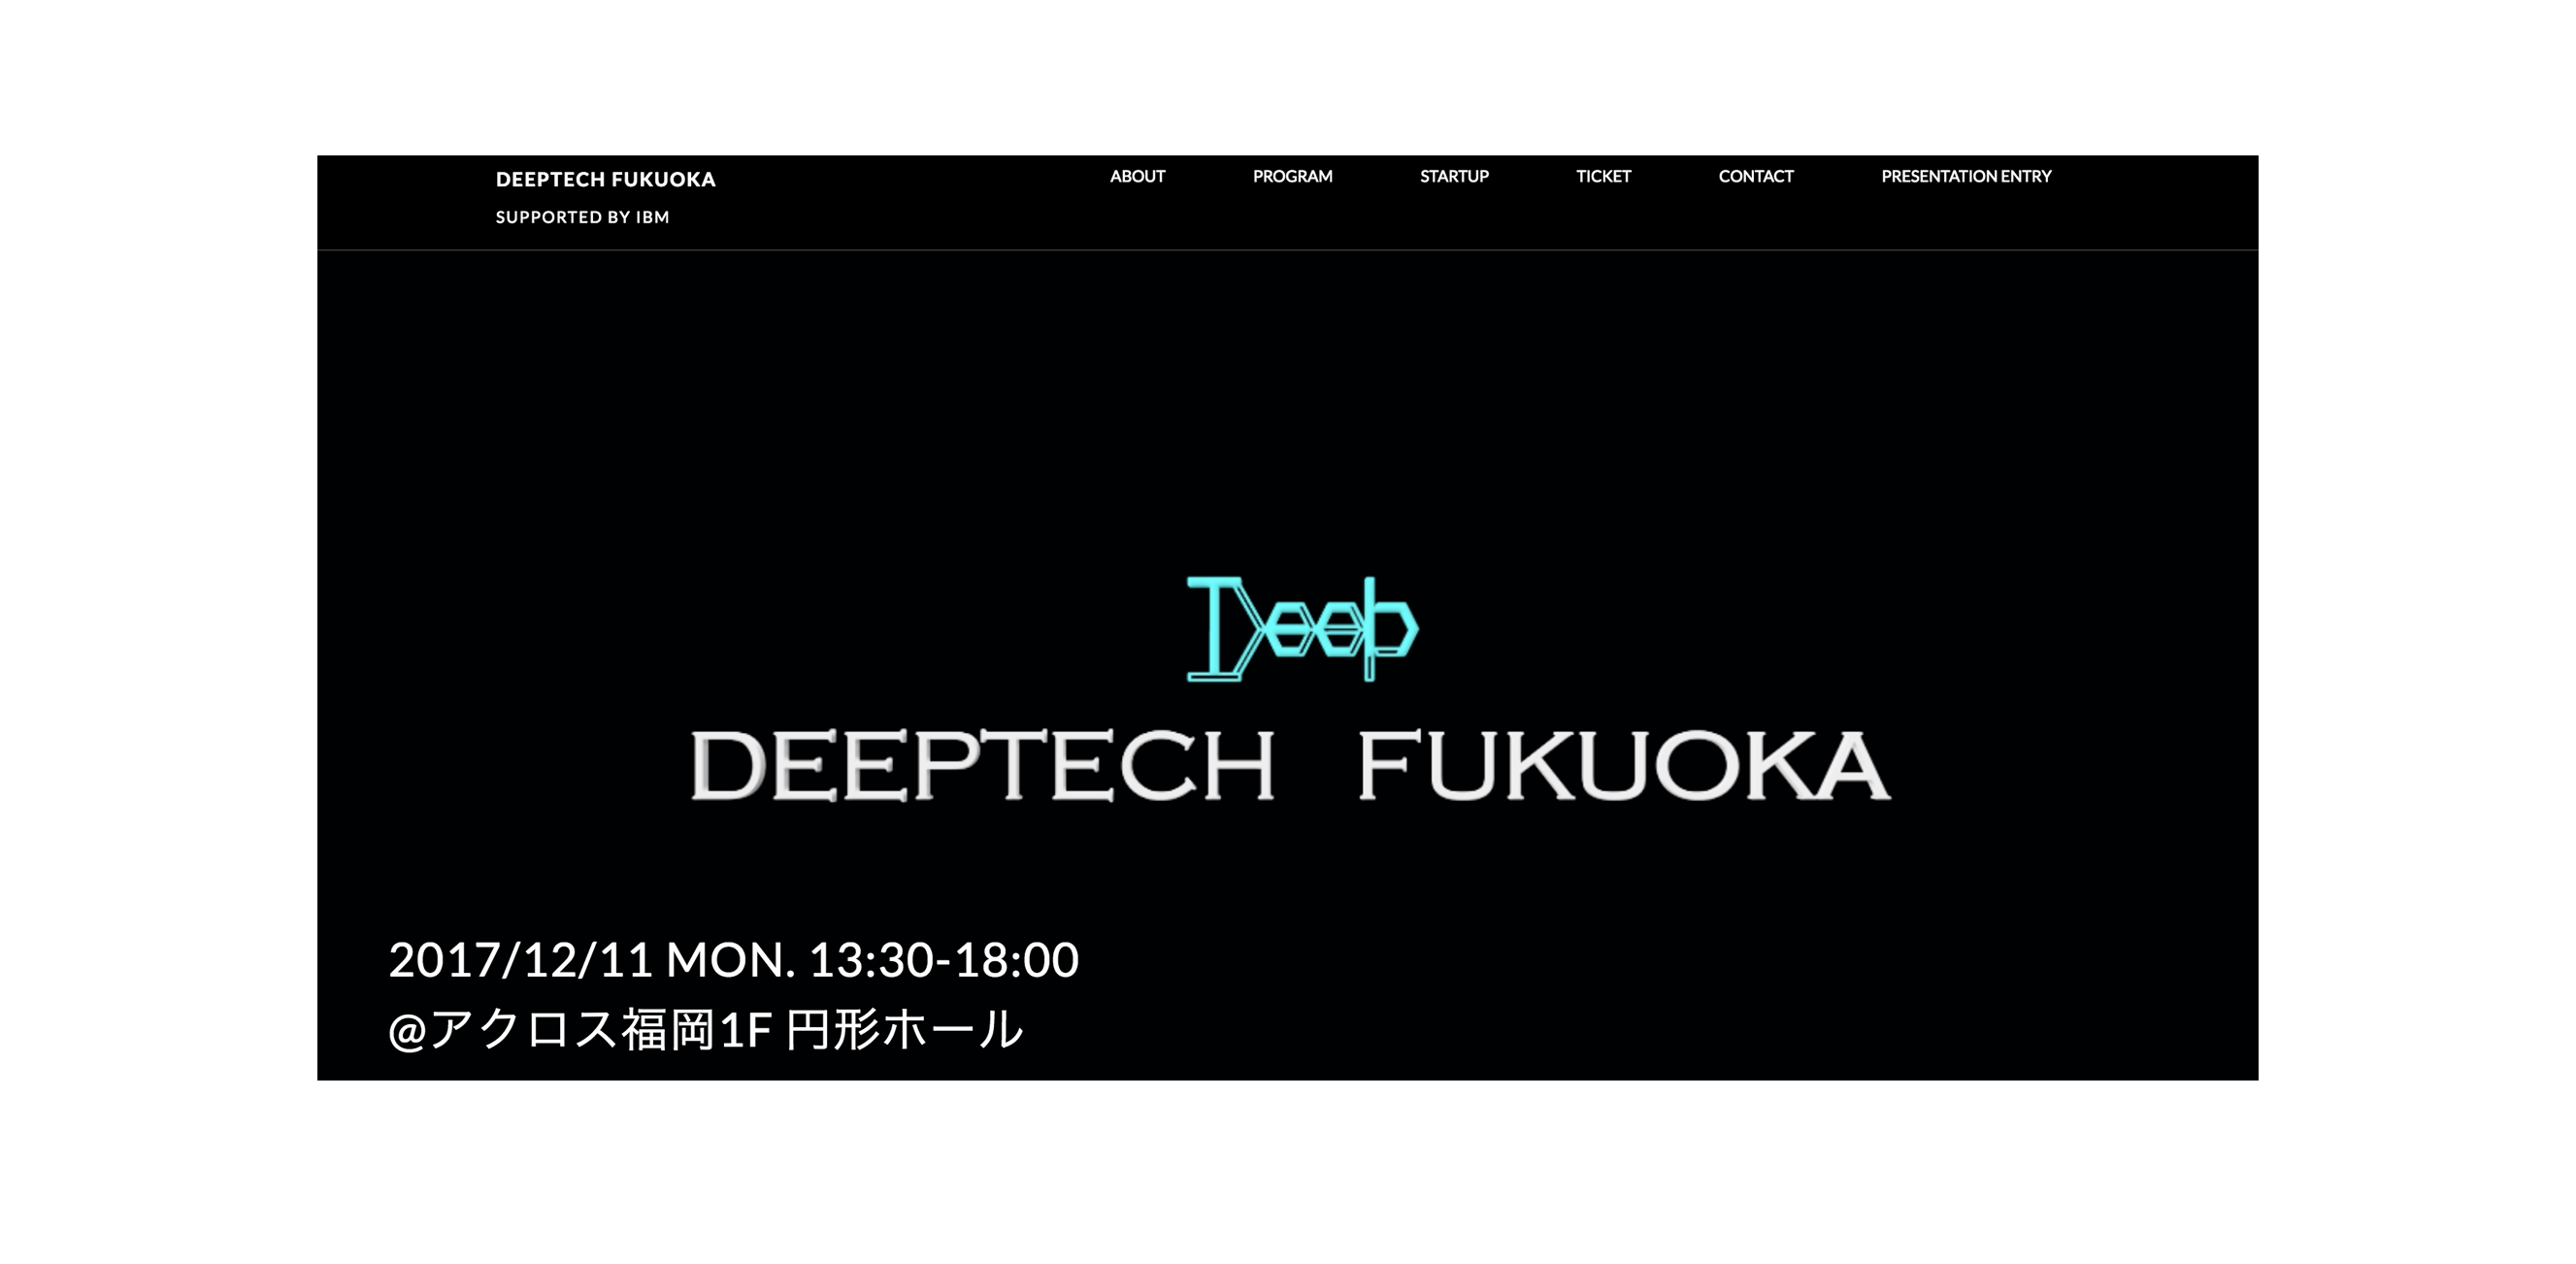 Deeptech Fukuoka